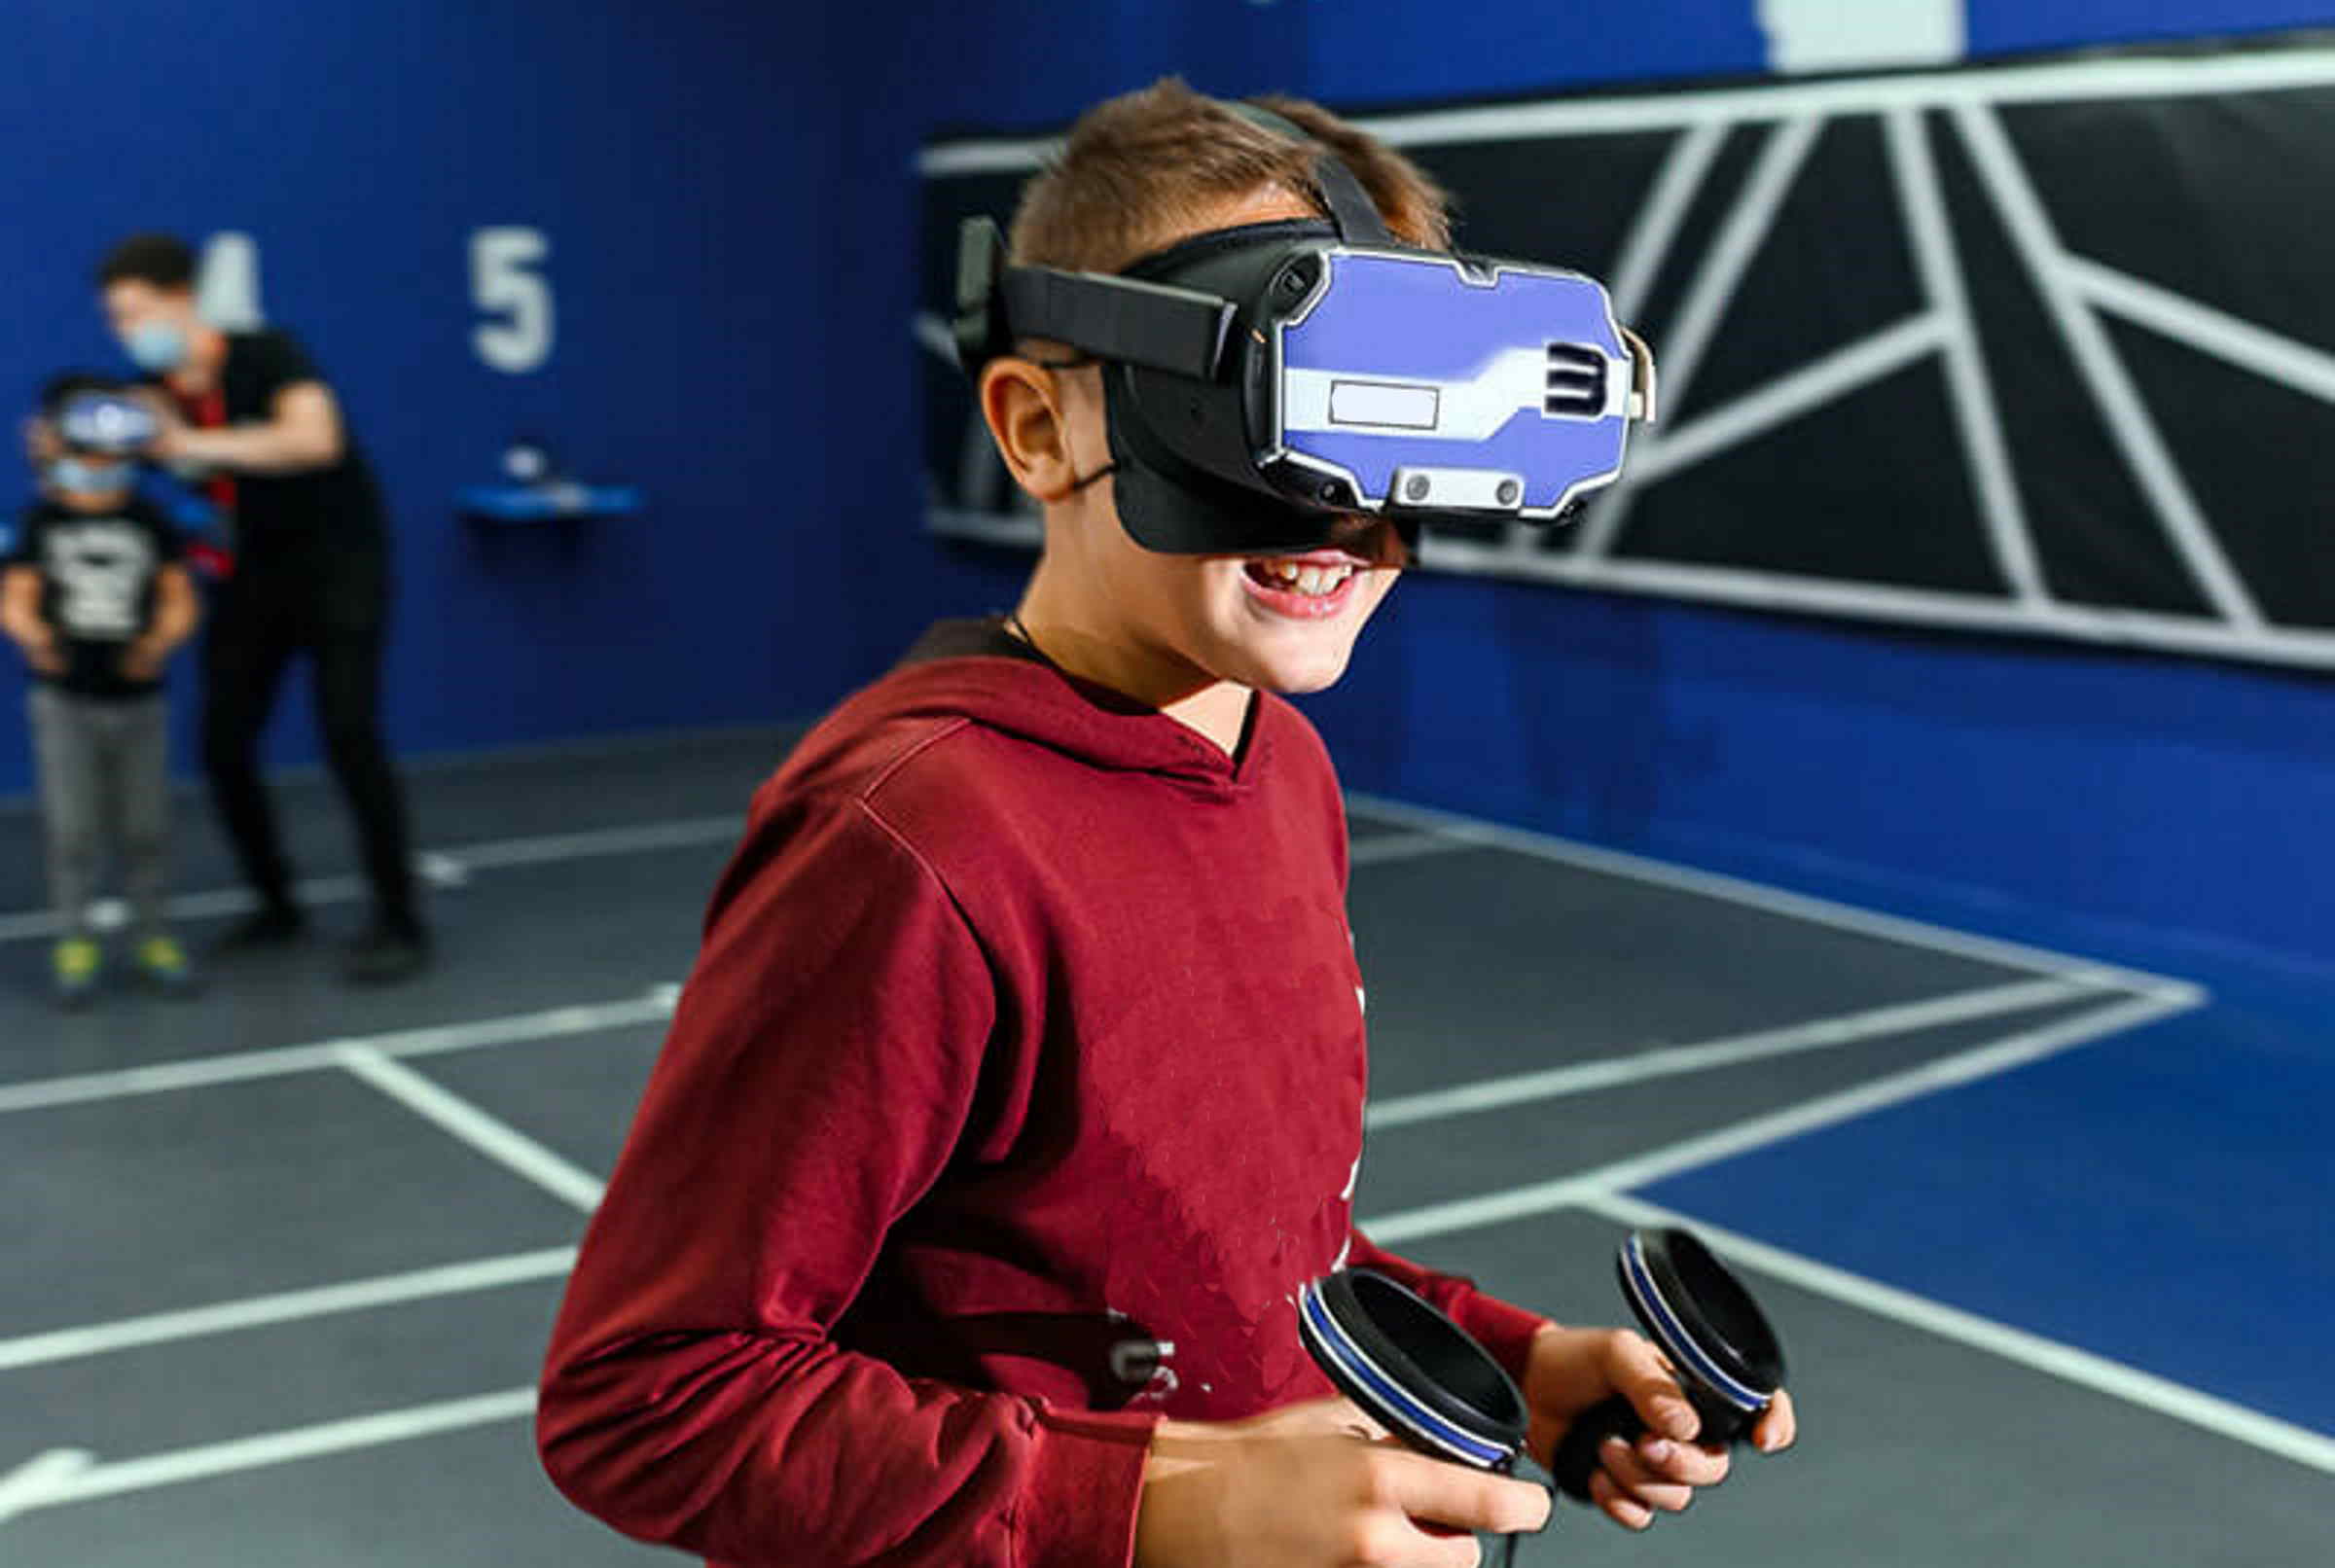 Vr квест игры. Виртуальная реальность WARPOINT. Варпоинт Арена виртуальной реальности. WARPOINT, Арена виртуальной реальности Тюмень. Виртуальная реальность на Arena VR.